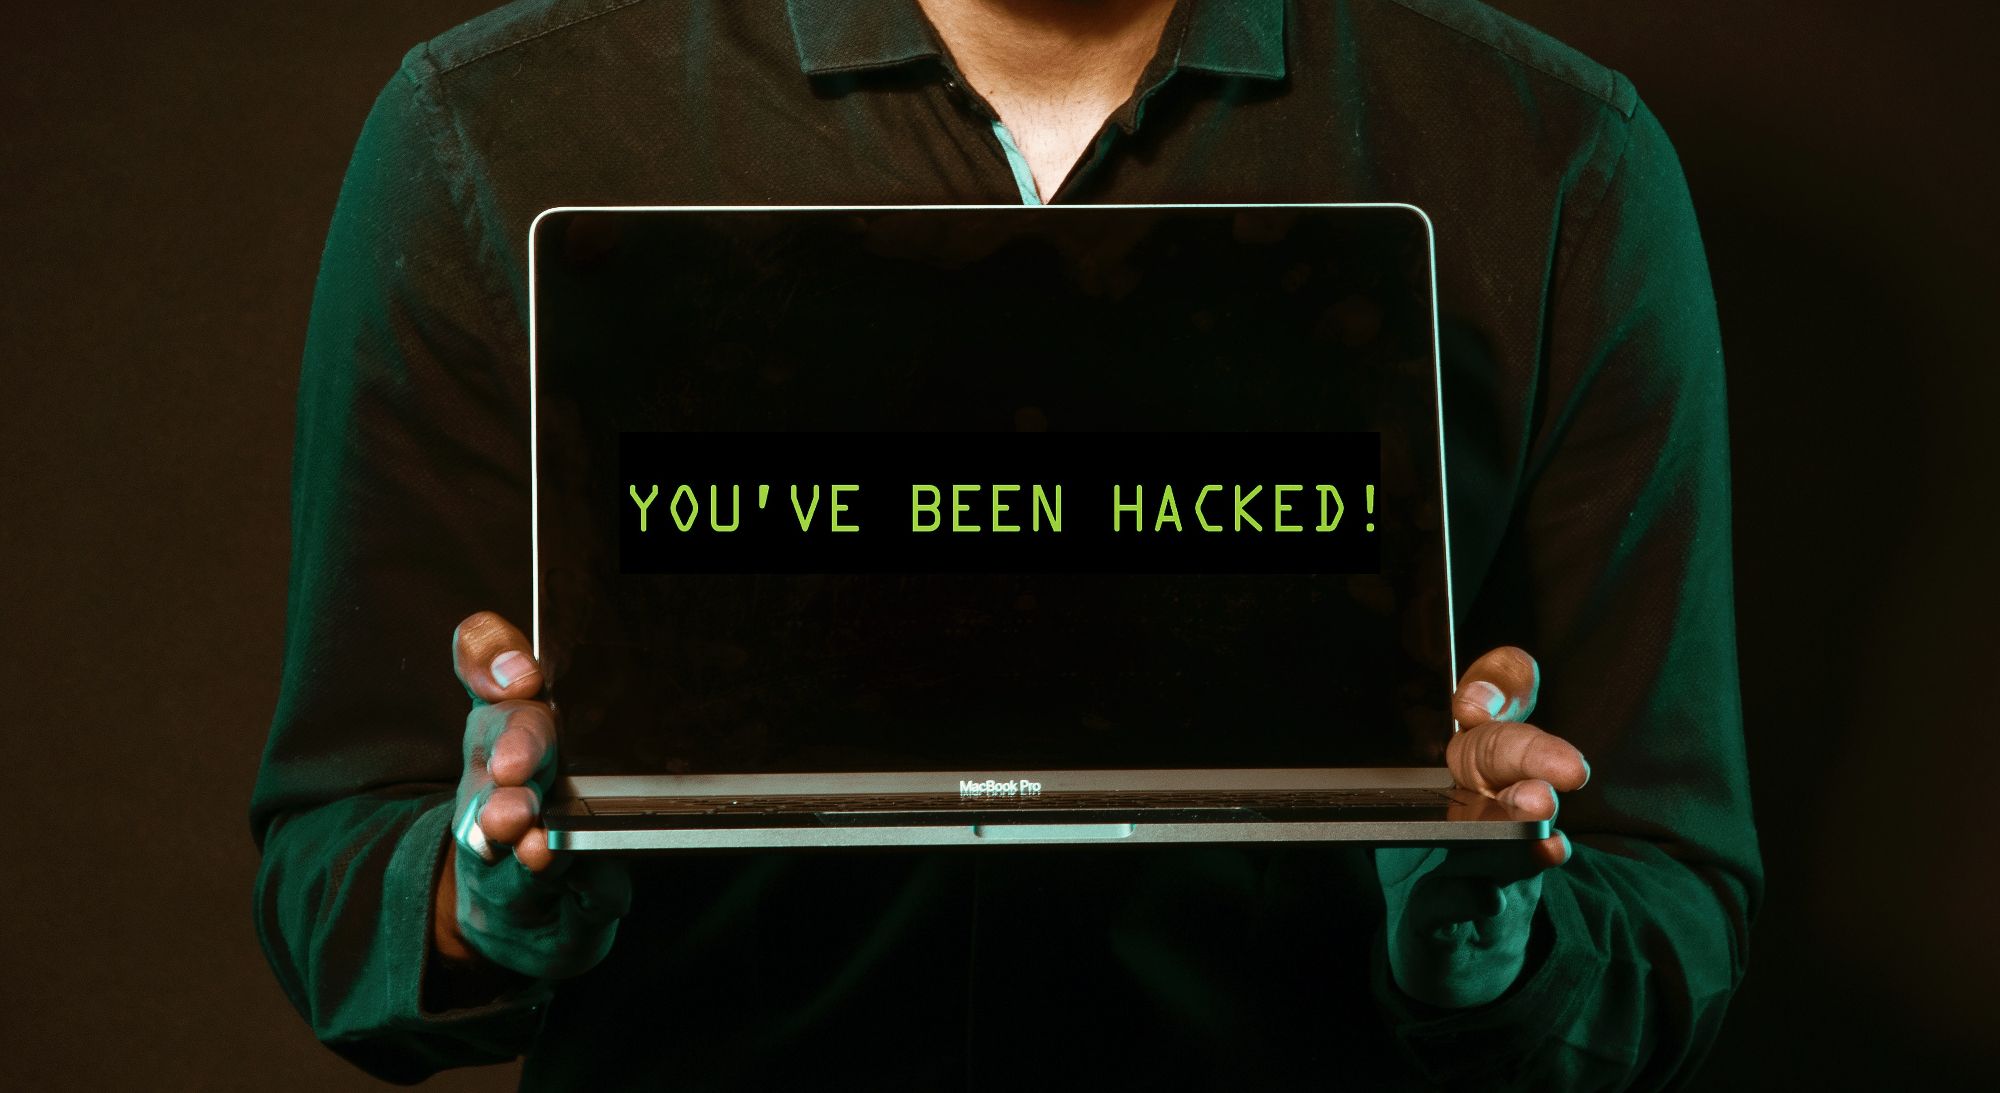 ha sido hackeado el mensaje que se muestra en la pantalla del portátil